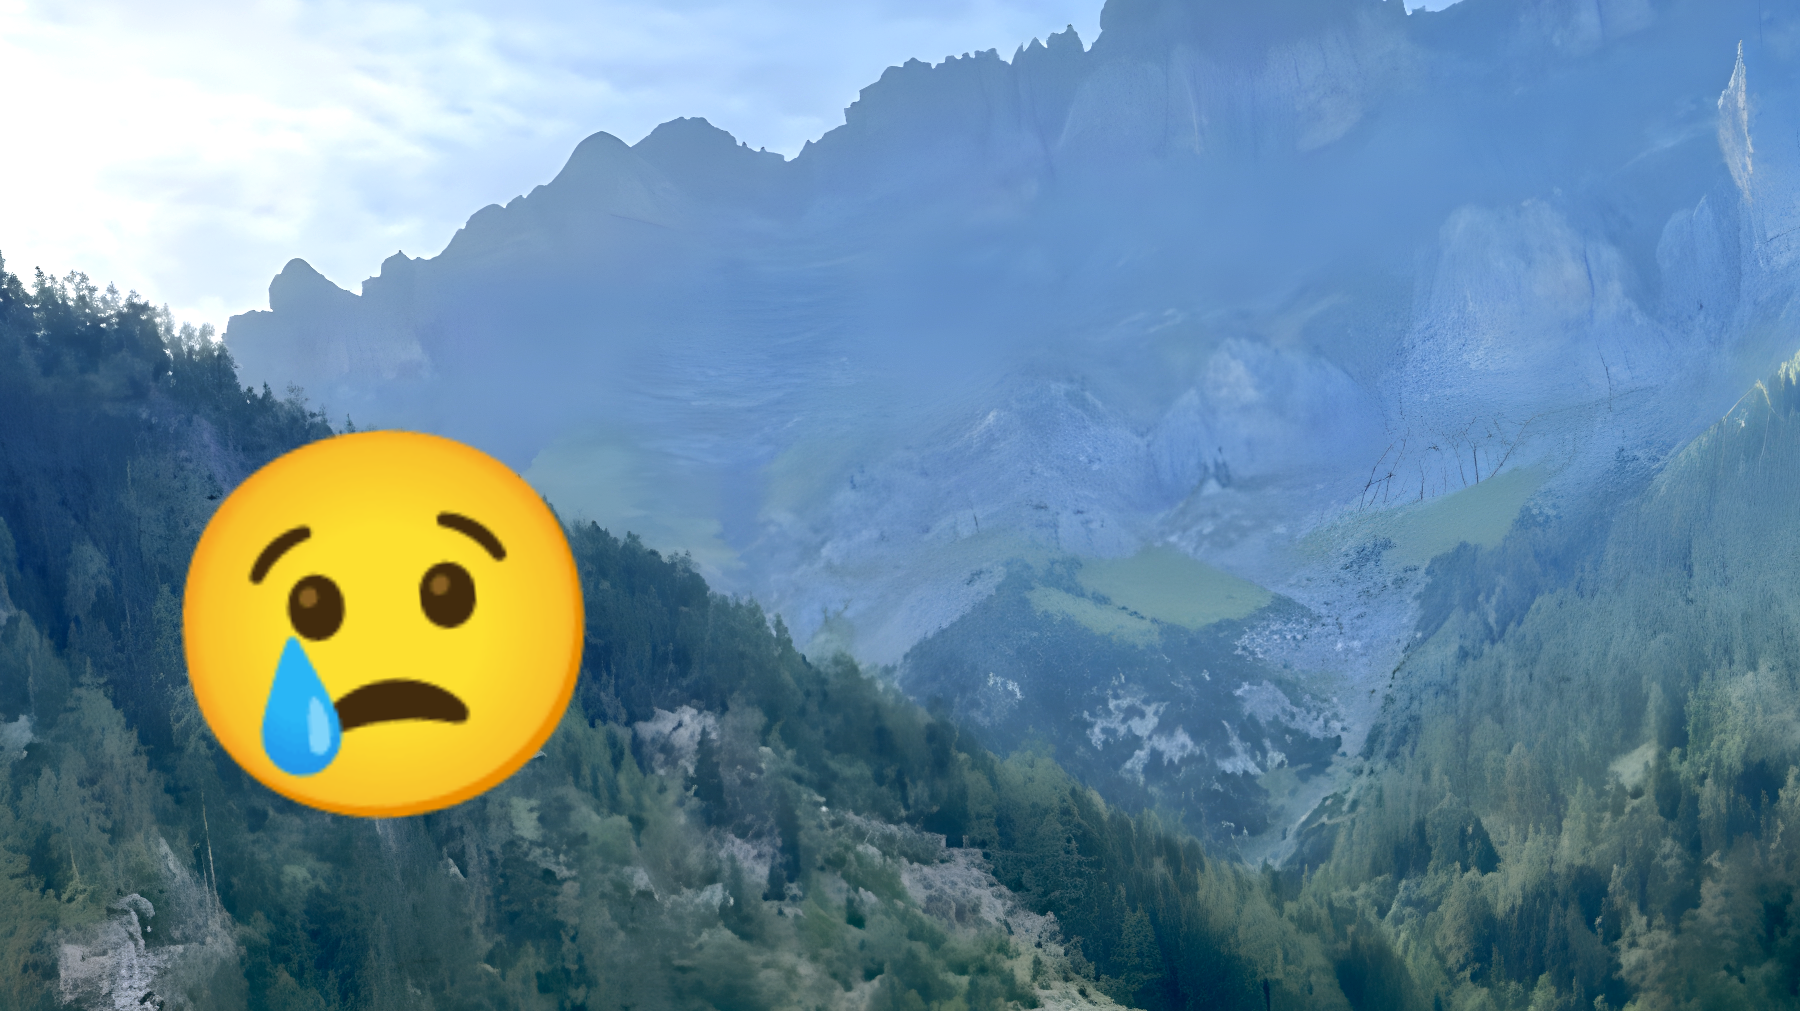 Base jumper disperso sulle Alpi svizzere: il tragico epilogo che nessuno si aspettava